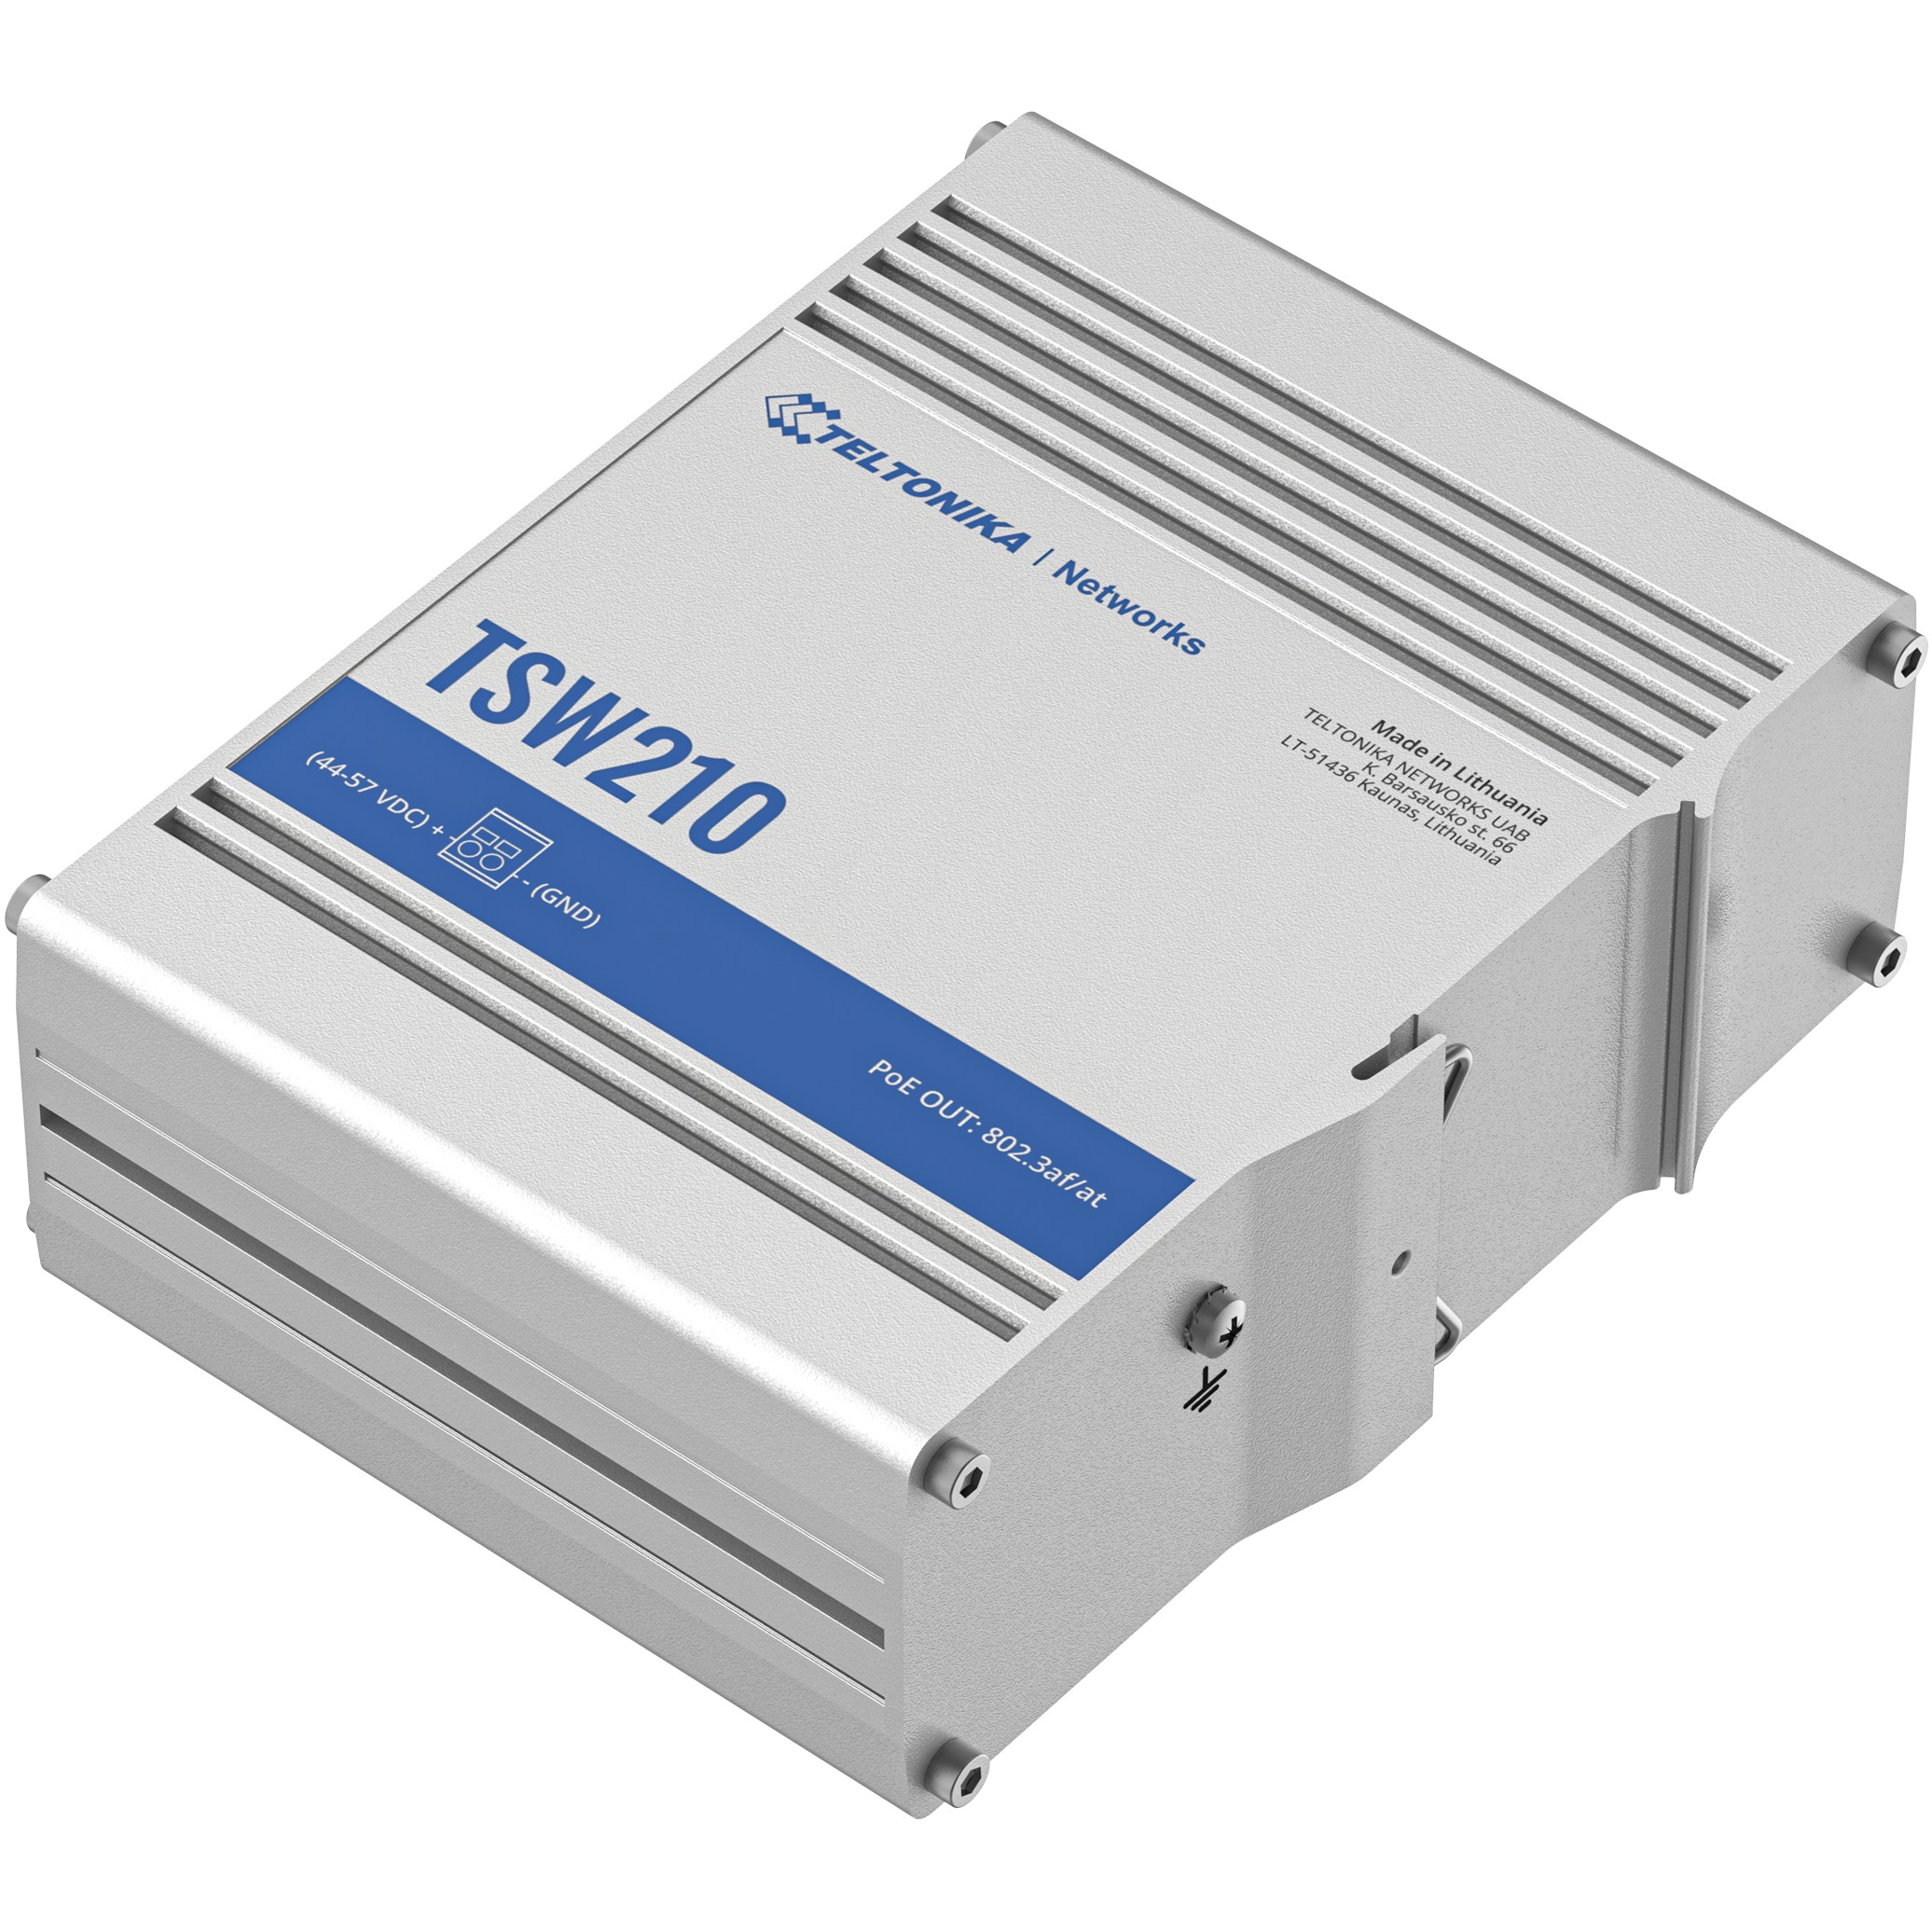 Teltonika TSW210000000, Switching Hubs, Teltonika TSW210  (BILD5)